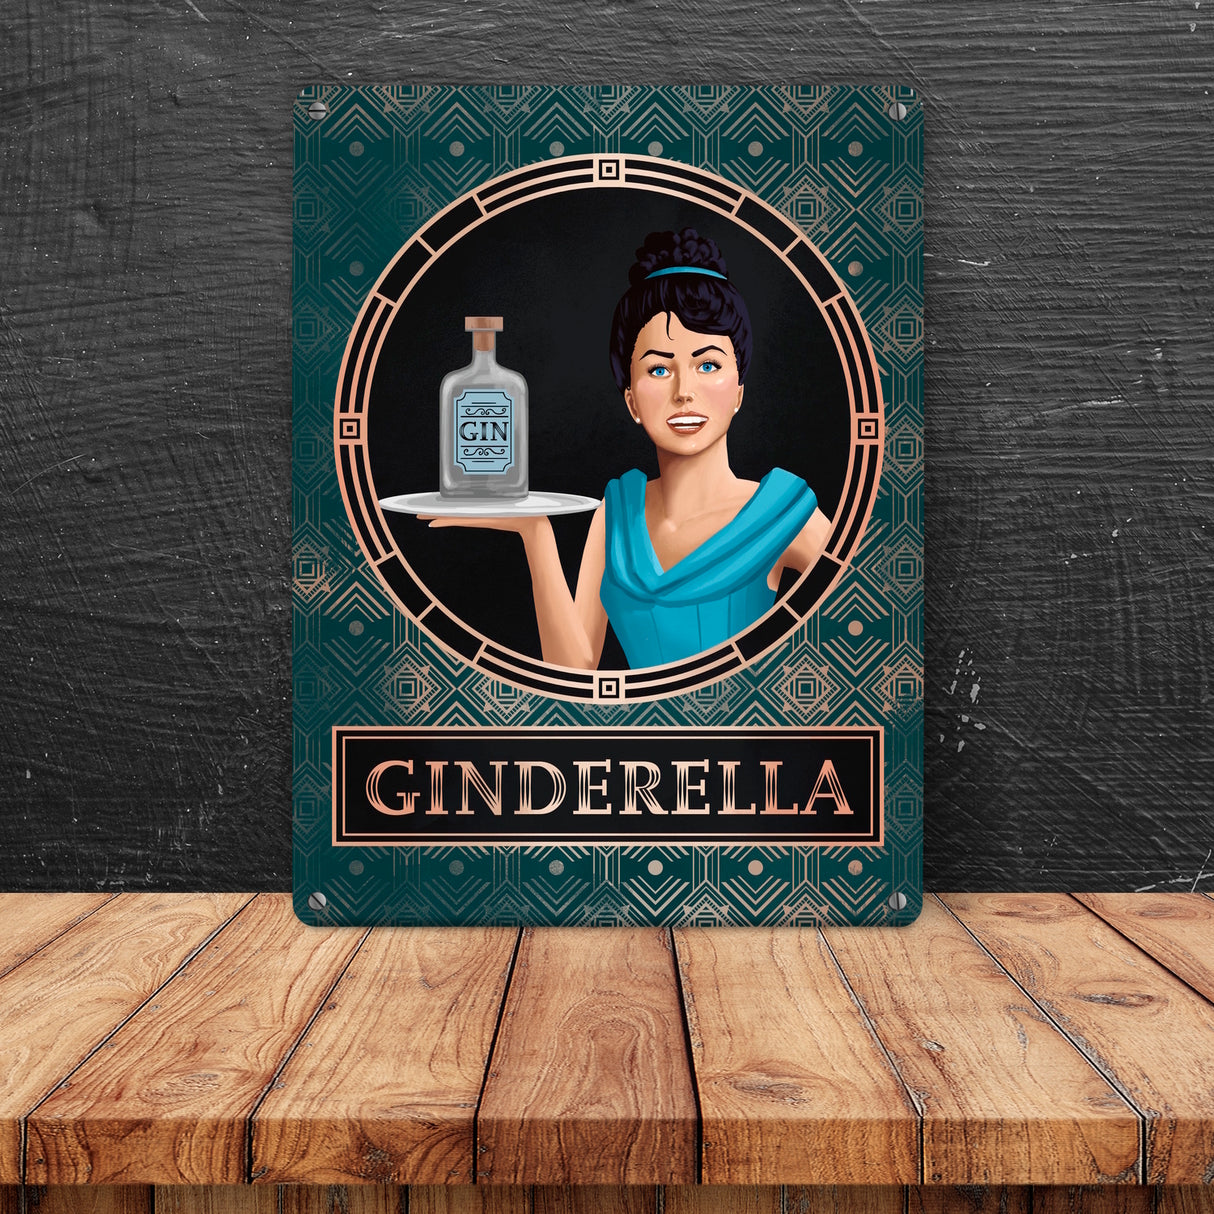 Ginderella Gin Metallschild für Gin-Liebhaber